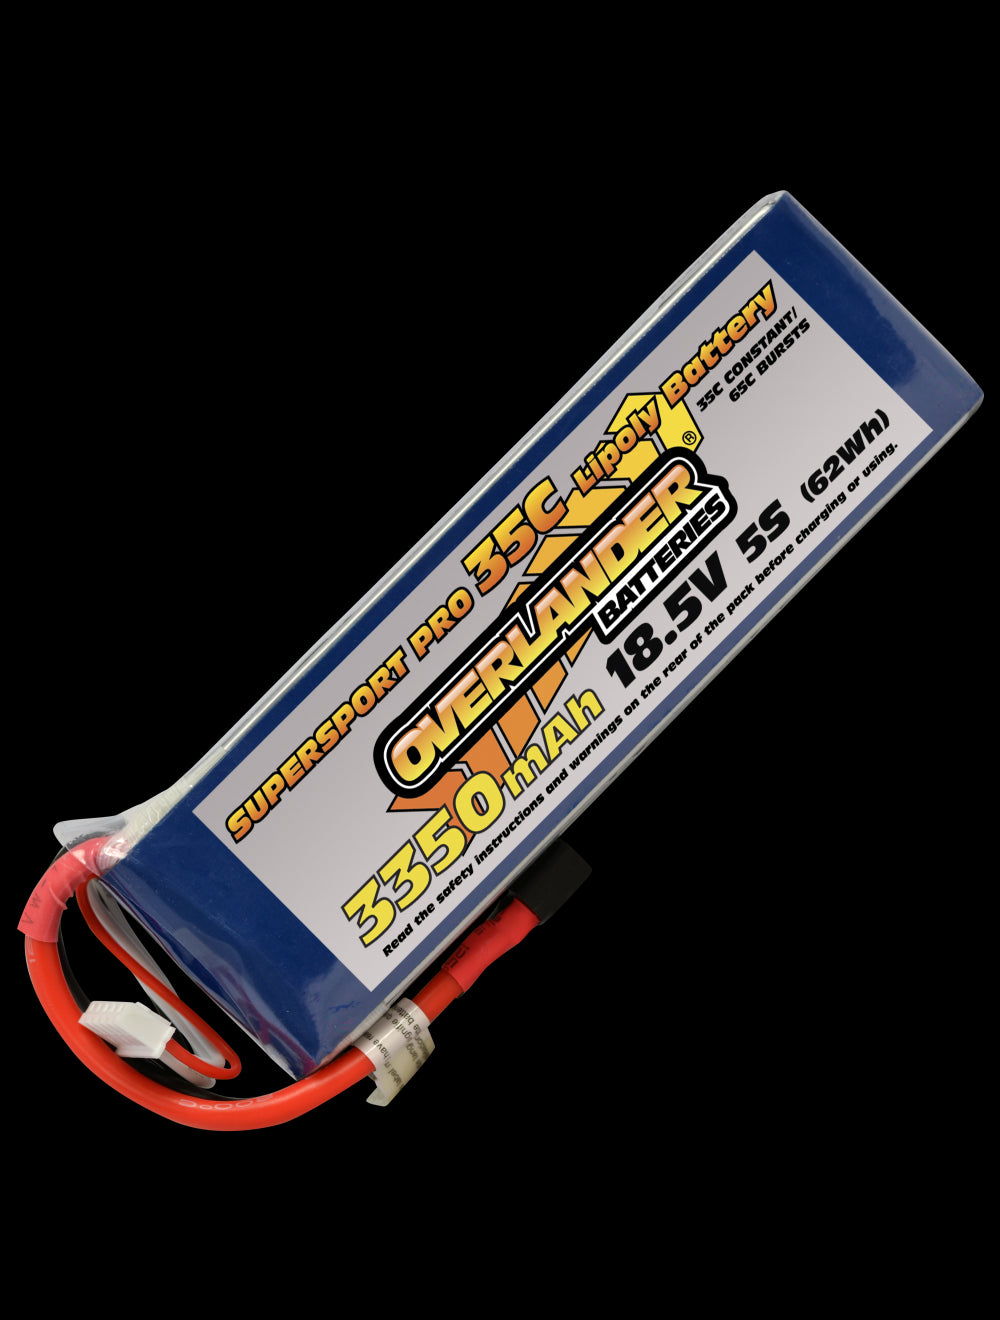 Overlander 3350mAh 18.5V 5S 35C Supersport Pro LiPo Battery - EC3 Connector 3123